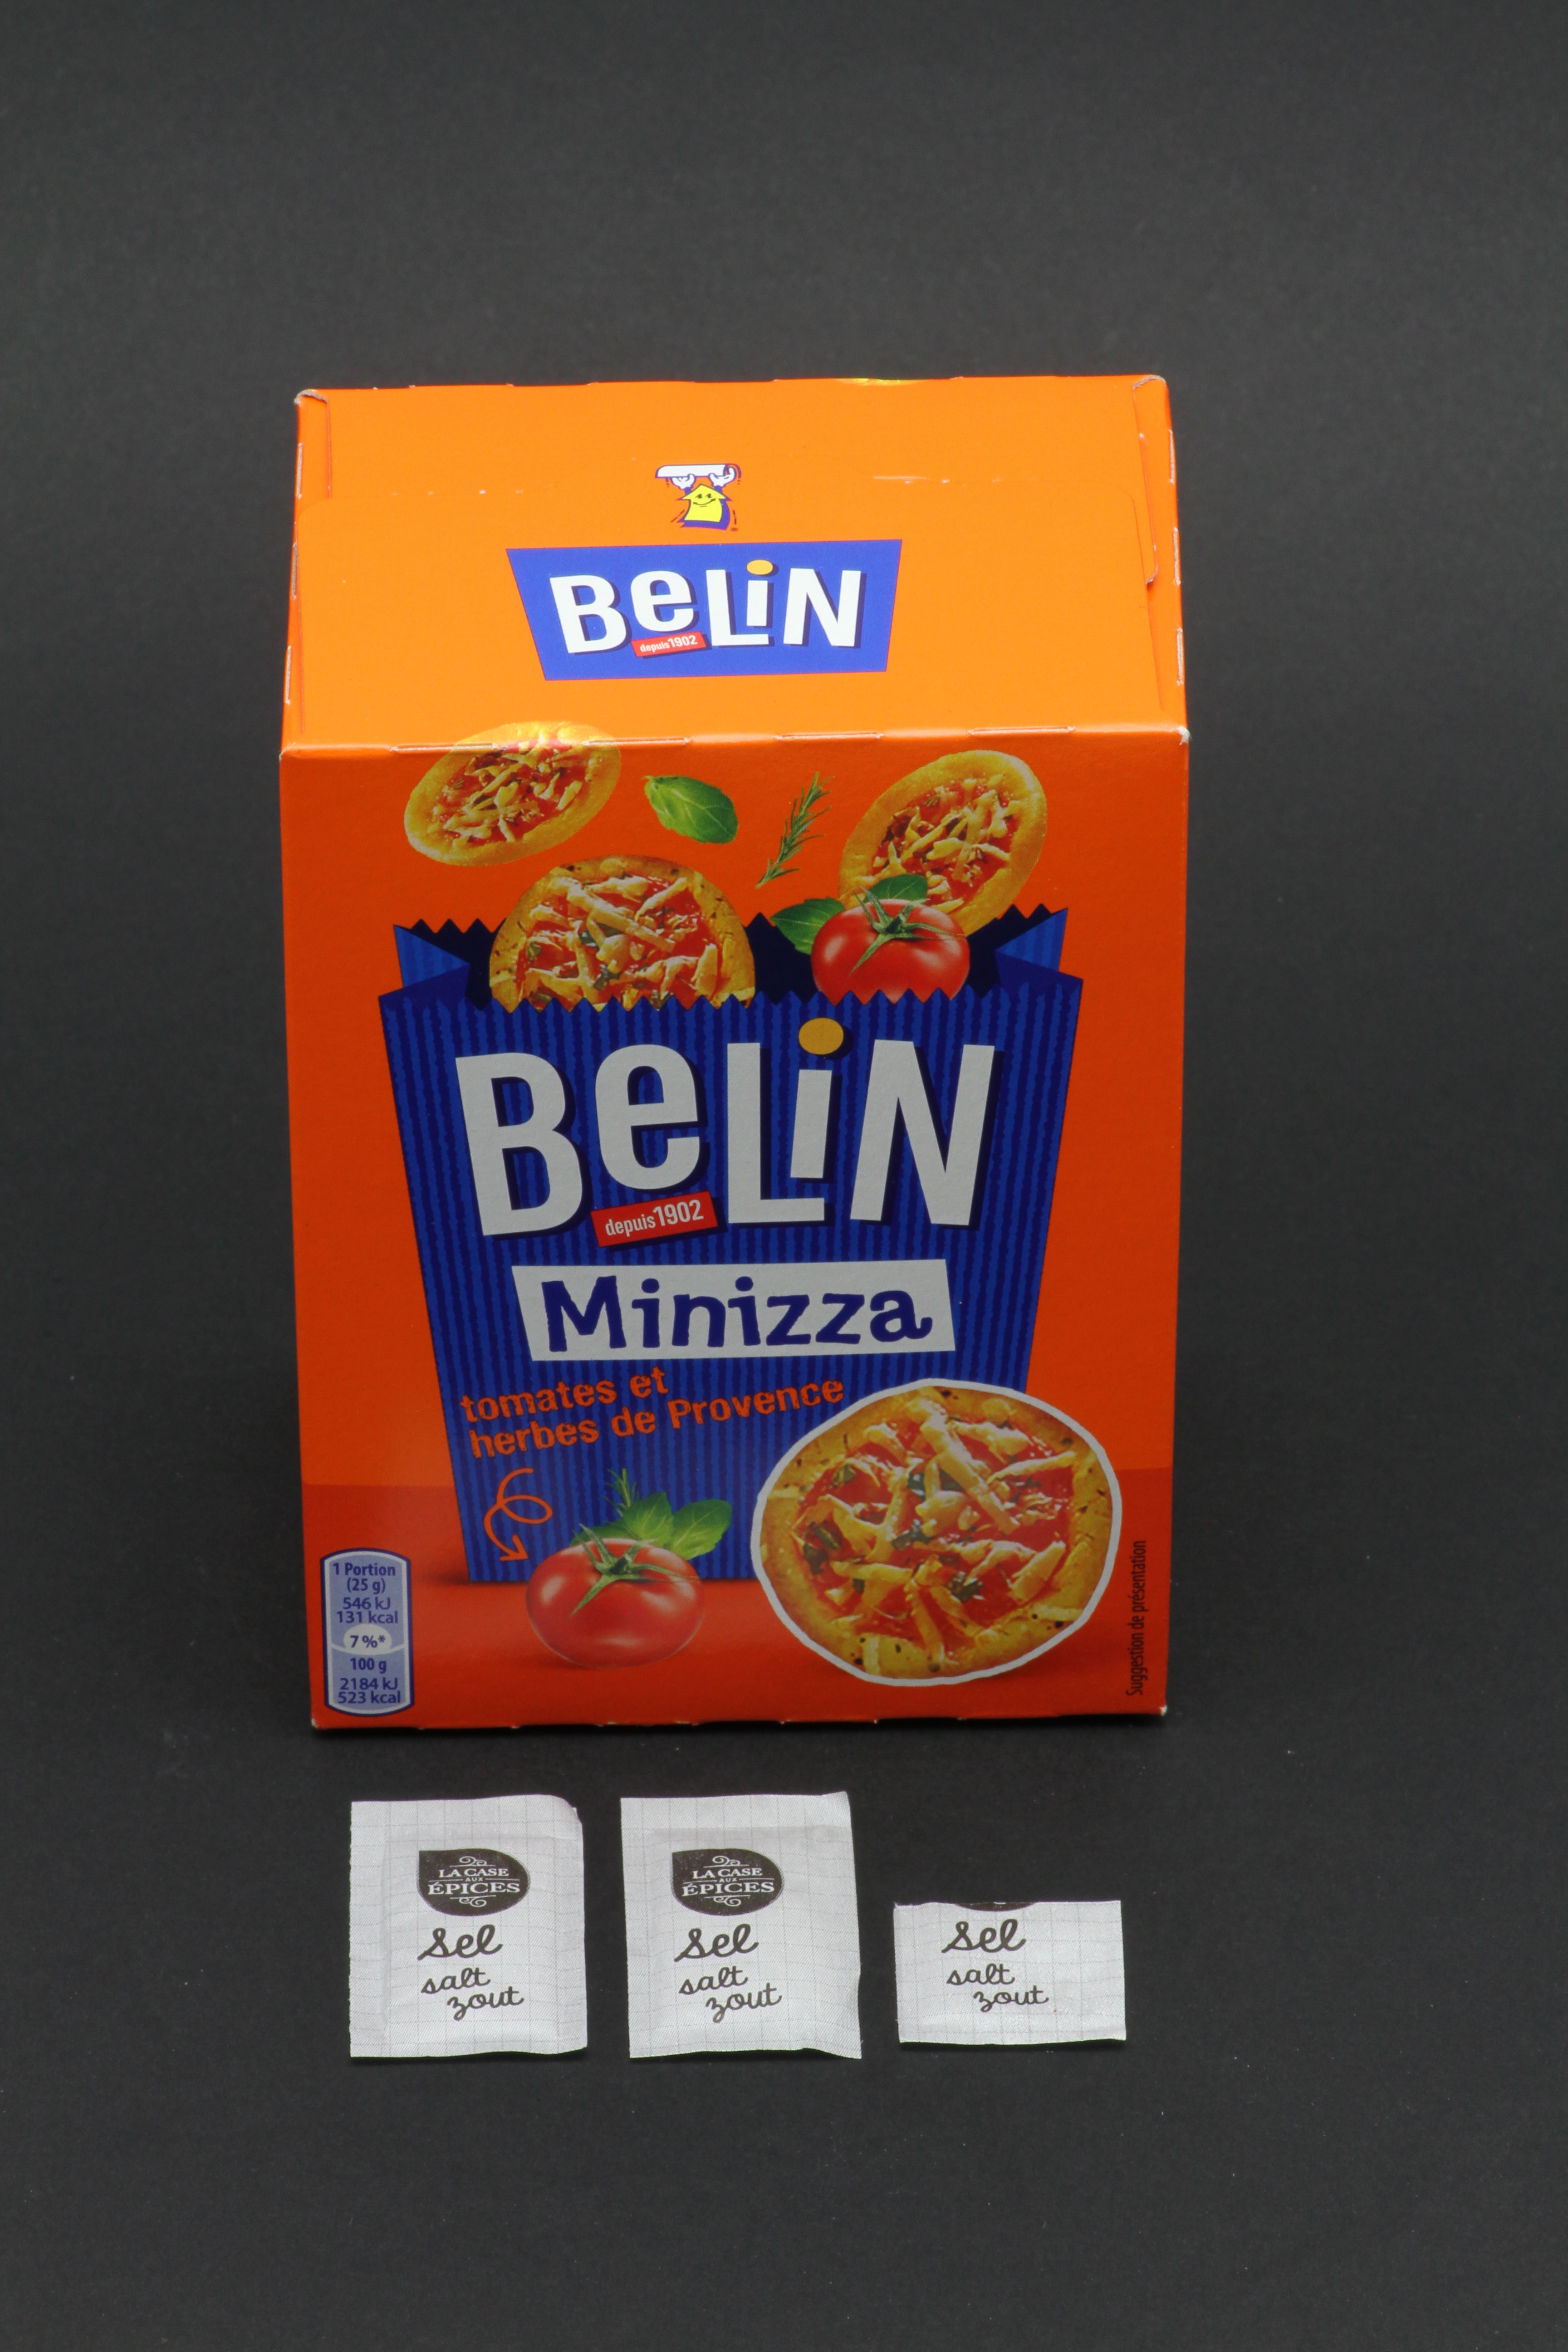 1 boite de Minizza de Belin contient 2,6 dosettes de sel soit 2g